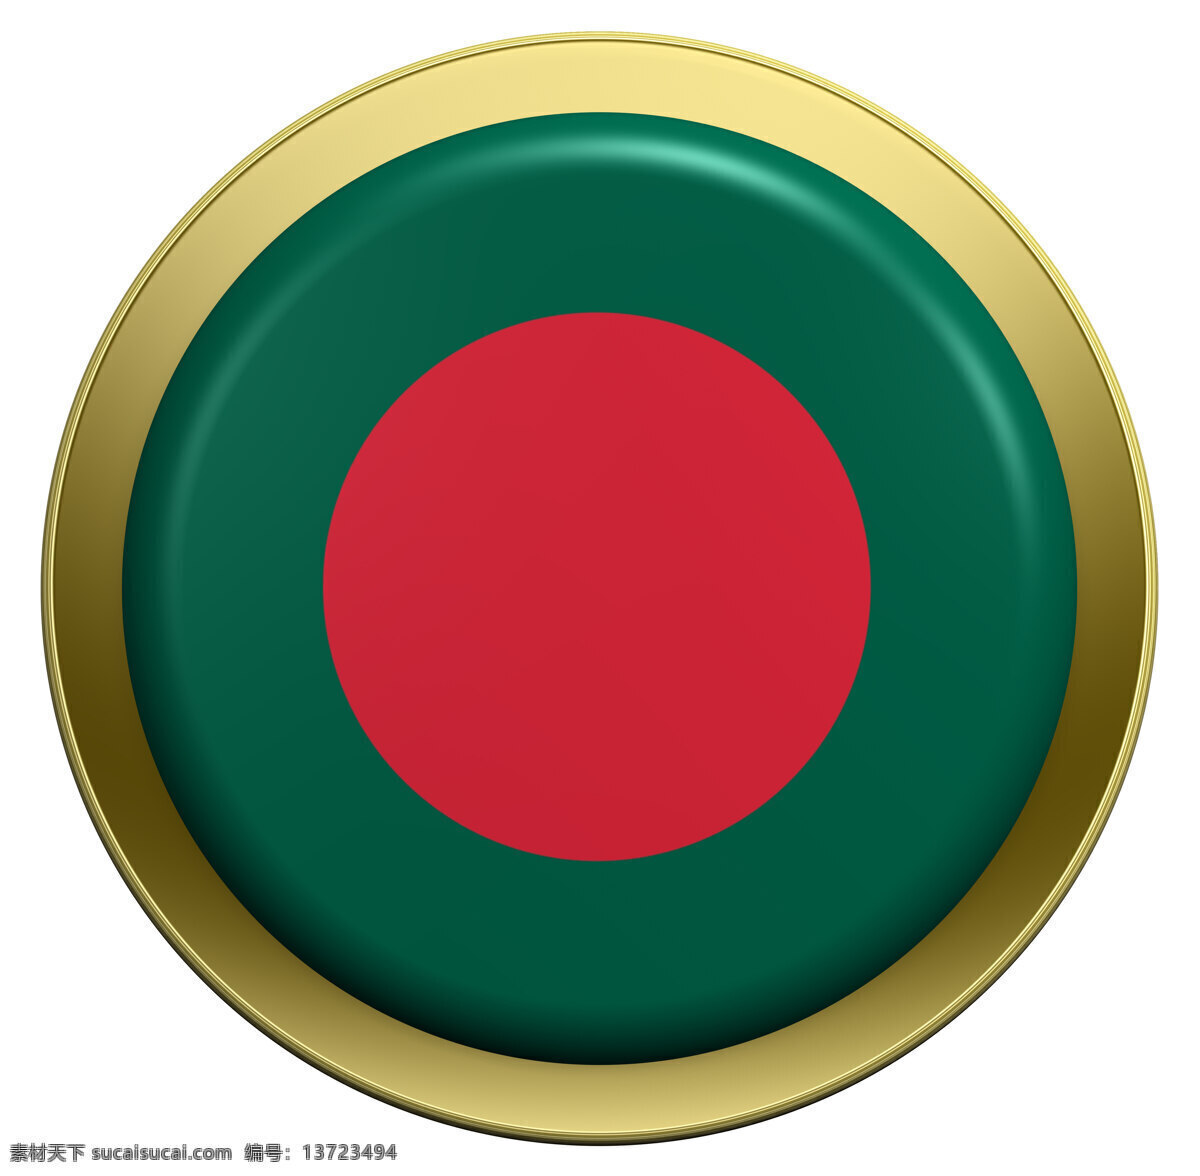 孟加拉 国旗 上 圆形 按钮 白色 隔离 风景 生活 旅游餐饮